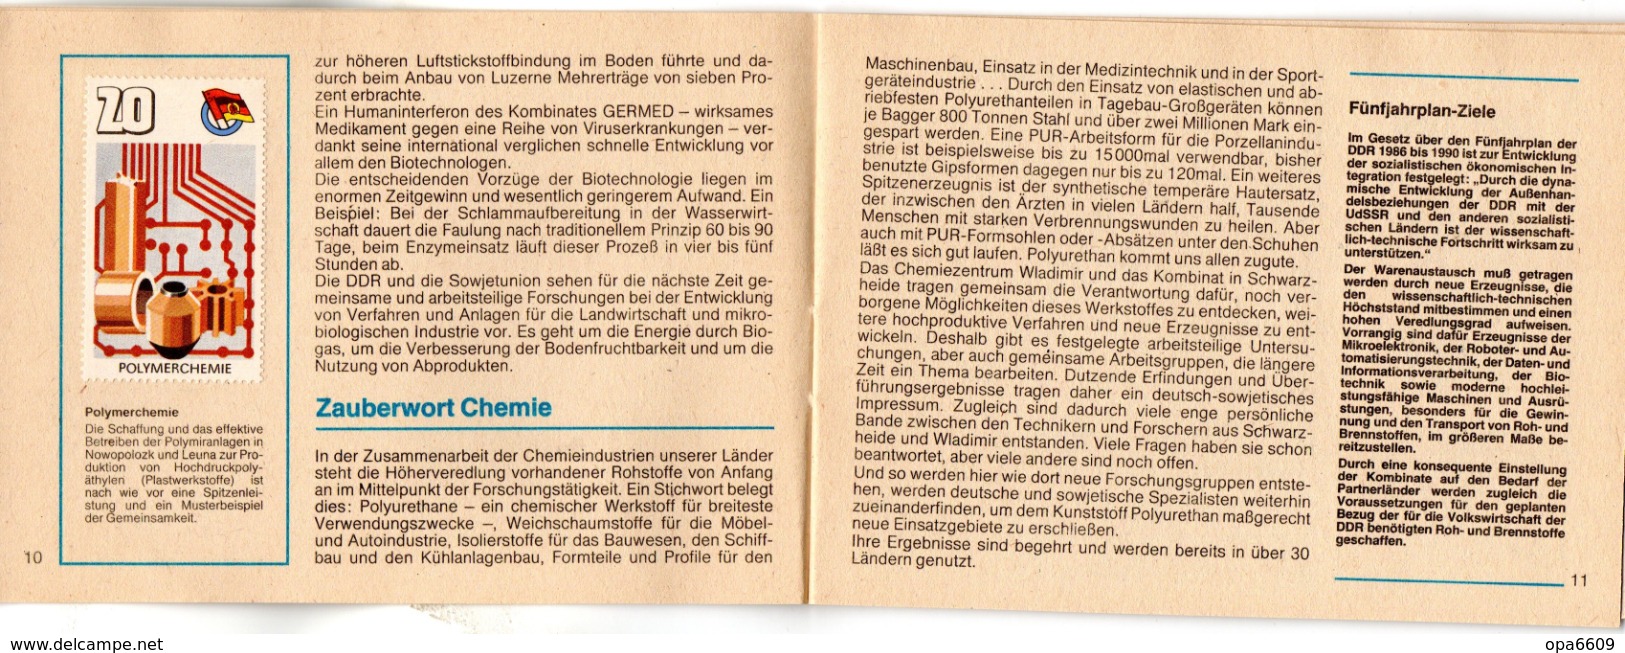 (Kart-ZD)DDR Sammelheft für die DSF-Sondermarkenserie 1988 "DDR-UdSSR ERFOLGE DER GEMEINSAMKEIT..." kompl. mit 21 Marken